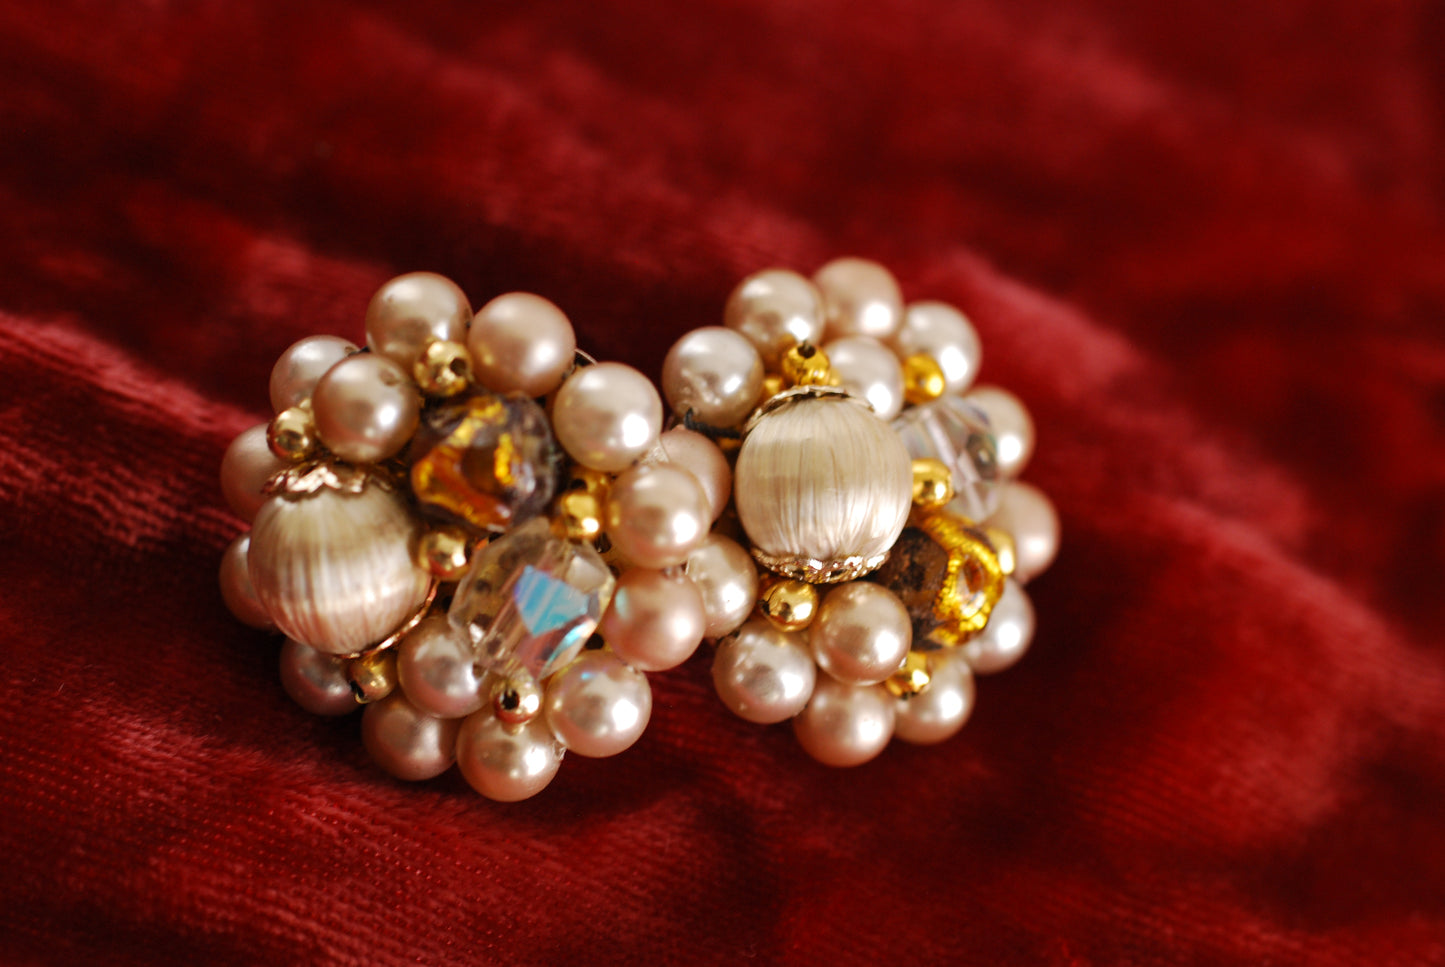 Vintage Cluster Earrings pearls, AB crystals in beige